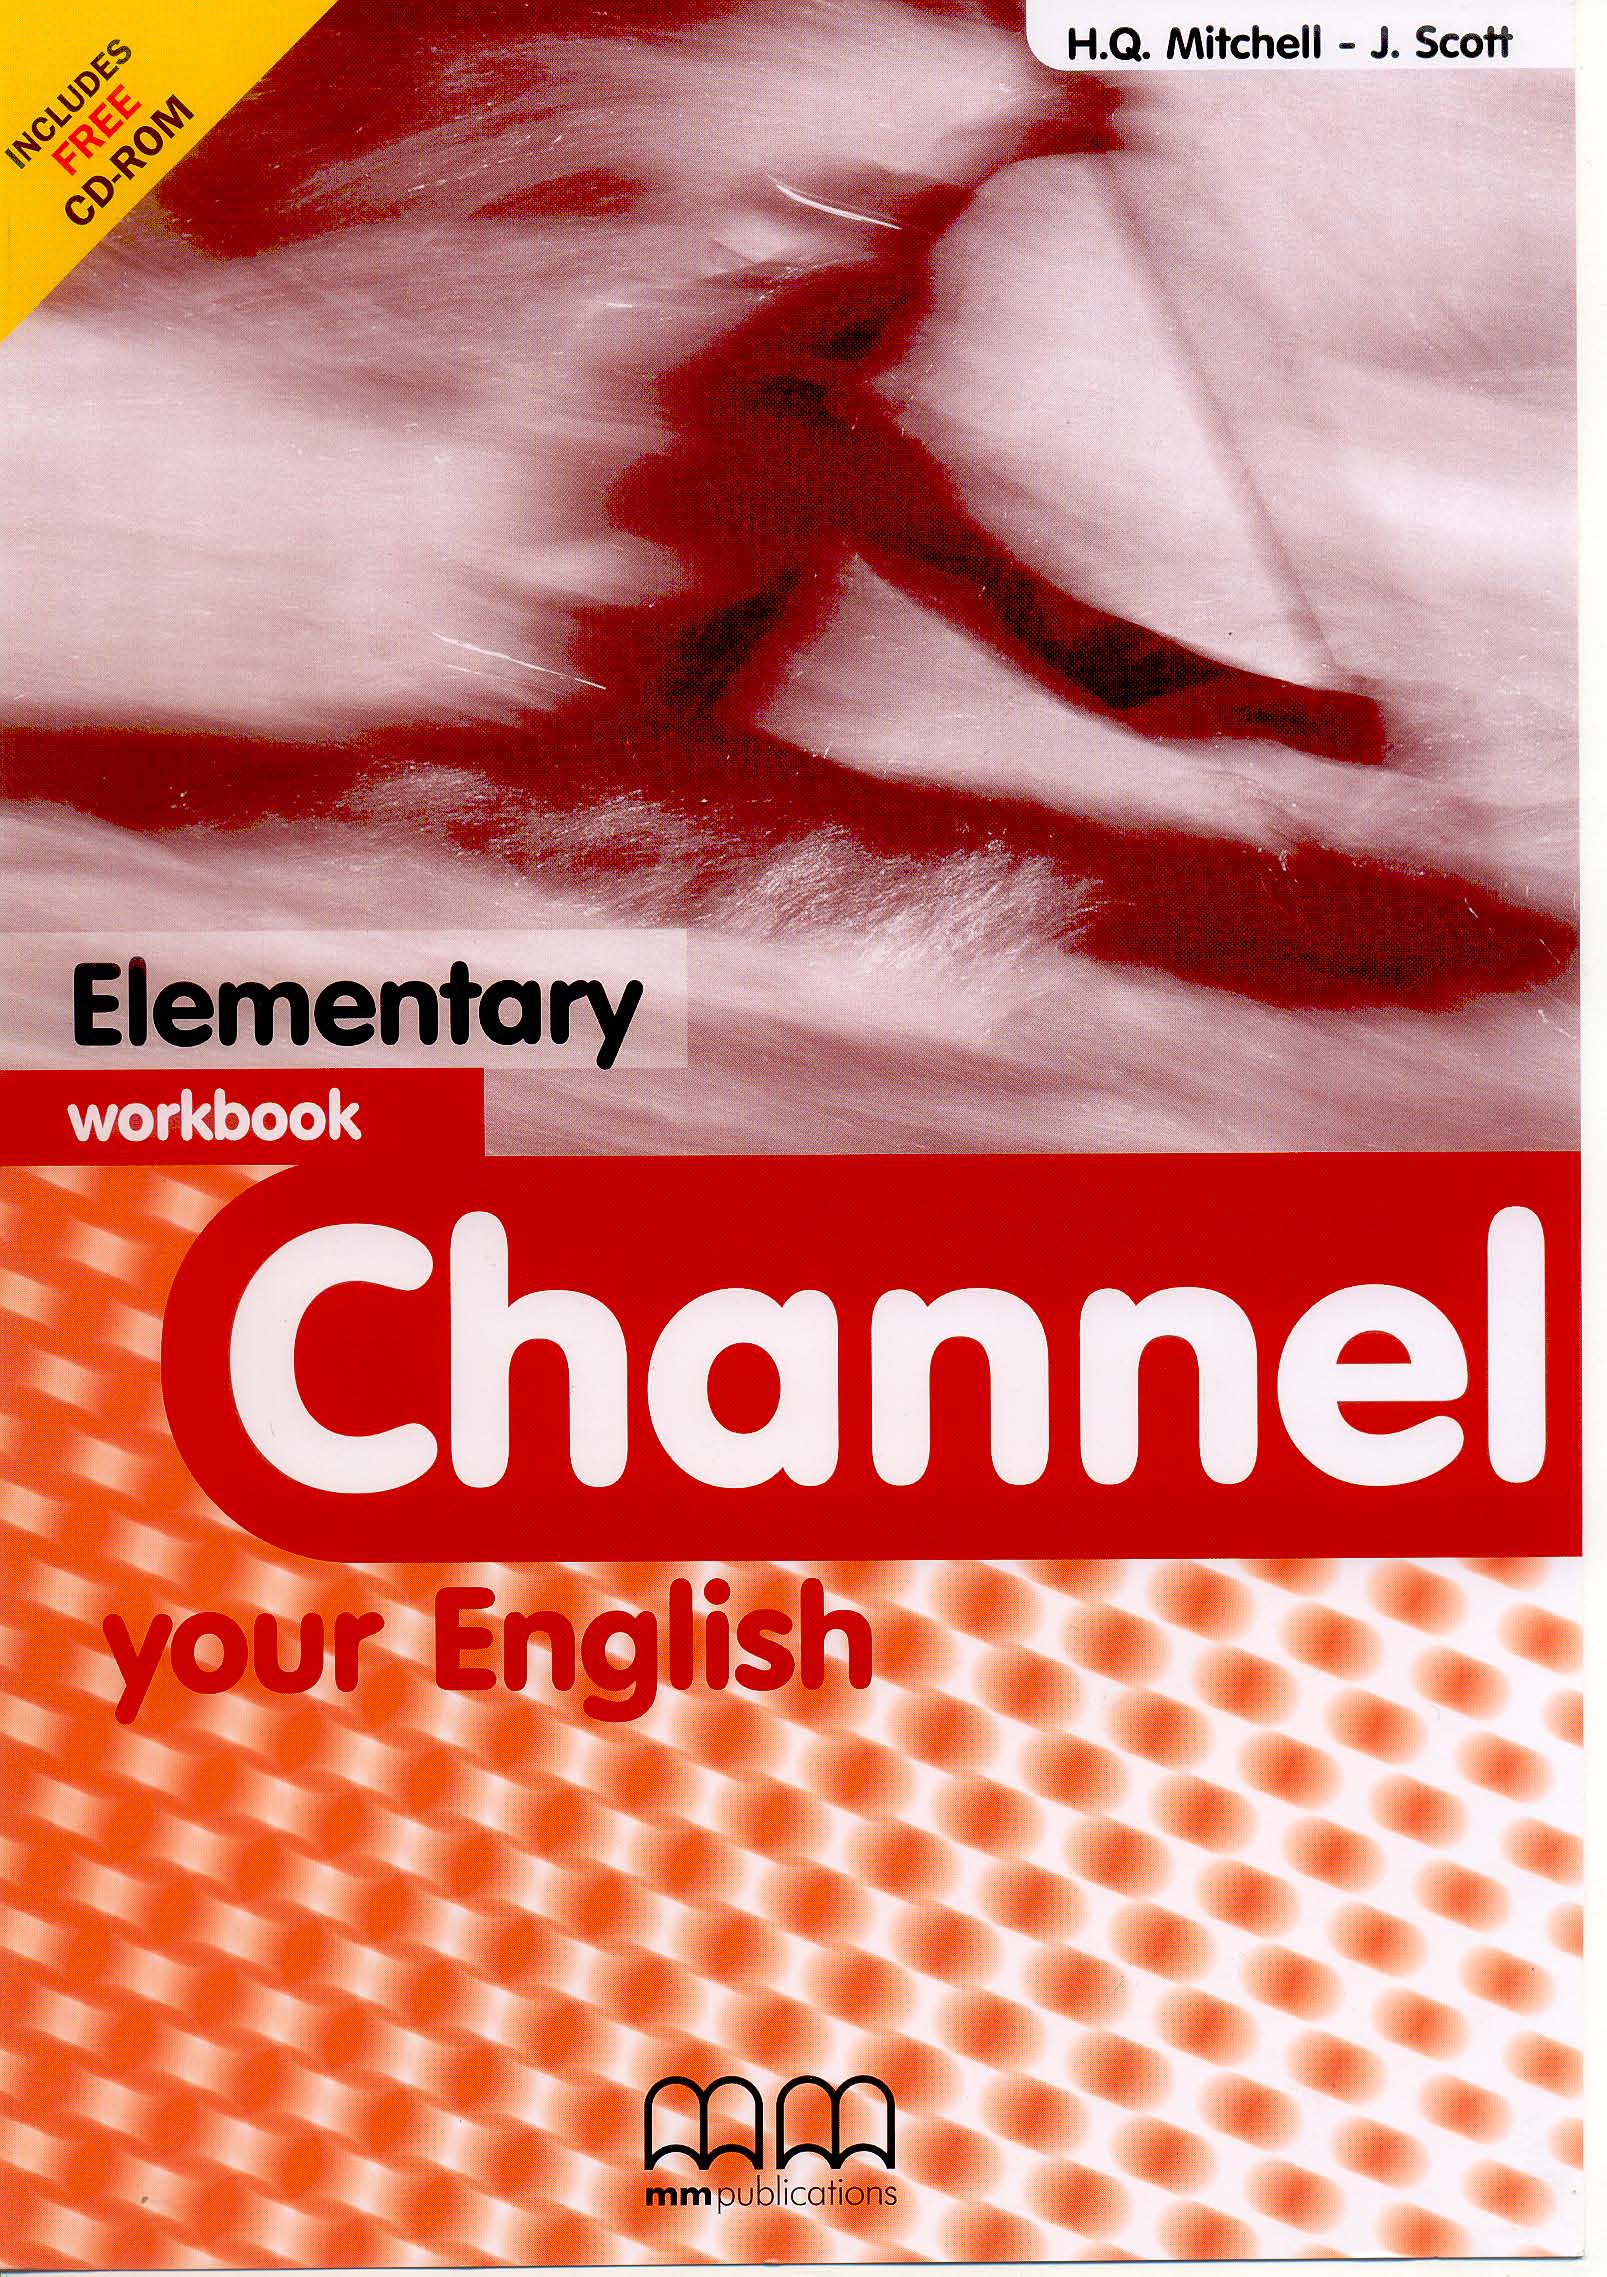 English elementary учебник. Английский Elementary. Книги English Elementary. Элементари книга на английском. English Elementary Workbook.